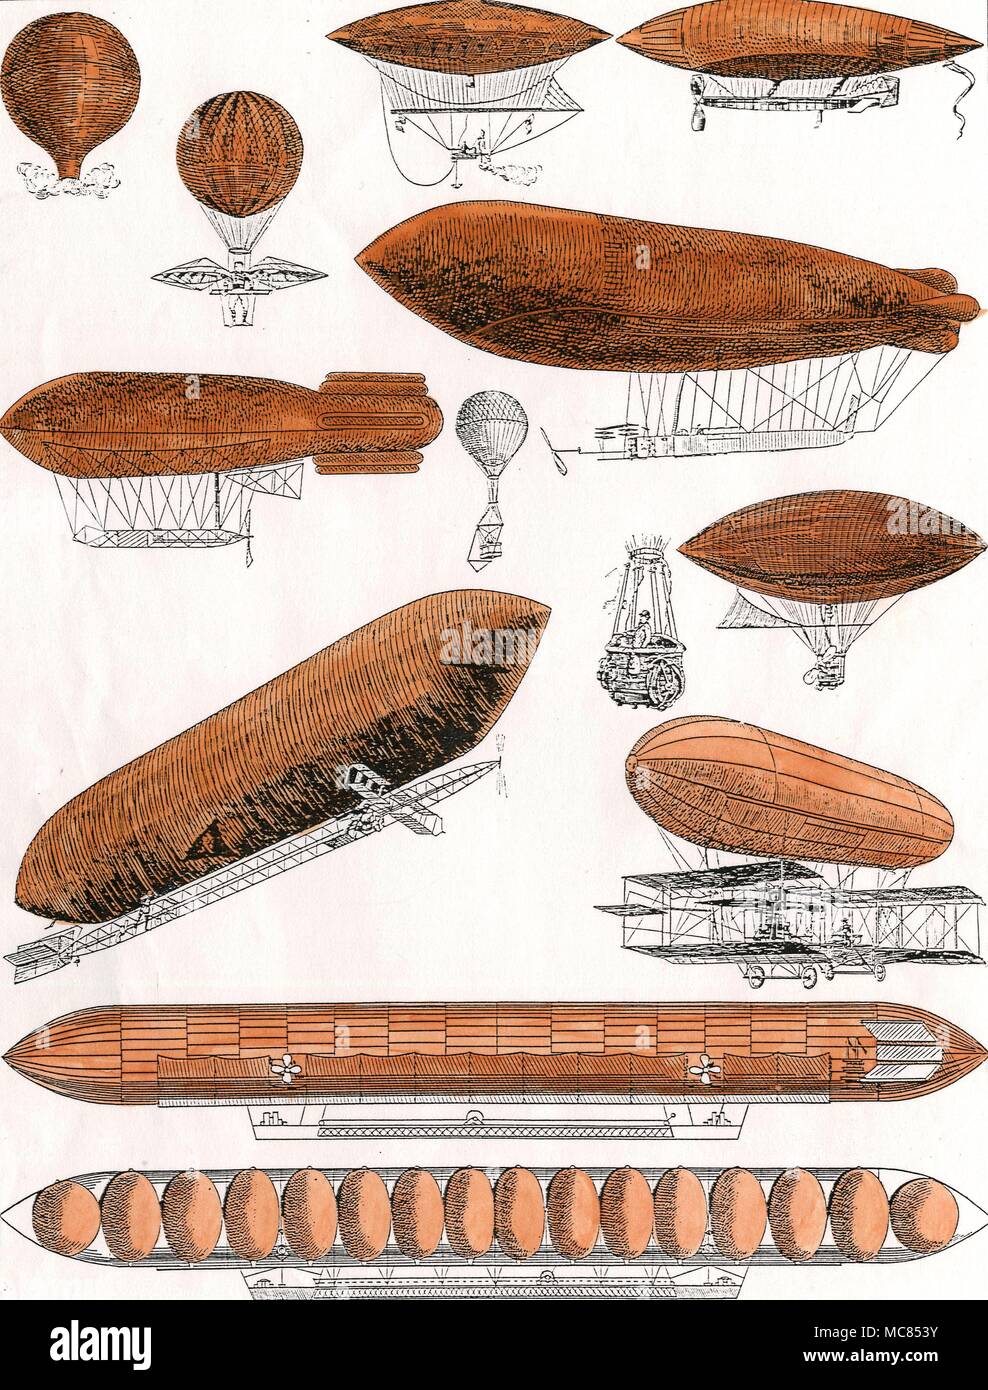 Flying machines douze ballons dans l'histoire, de la Montgolfière de 1783, à l'Airship de 1900 Zeppelin Banque D'Images